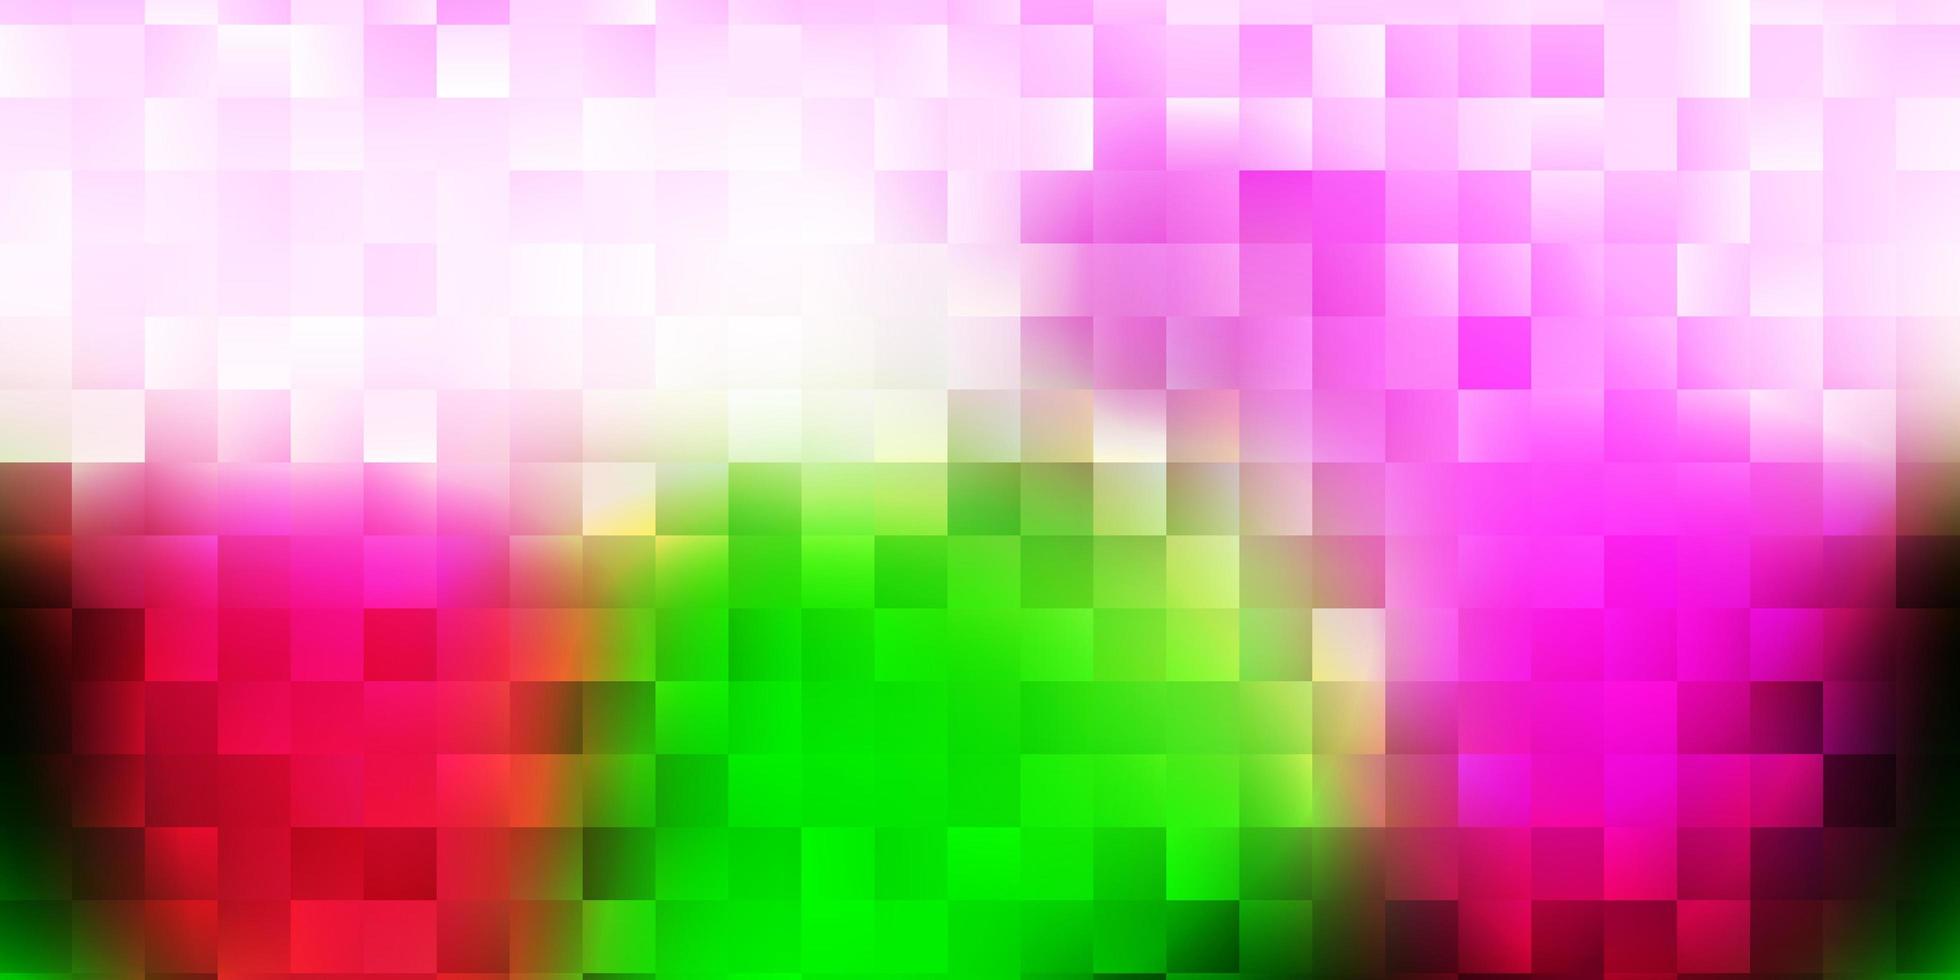 Fondo de vector rosa claro, verde con formas caóticas.